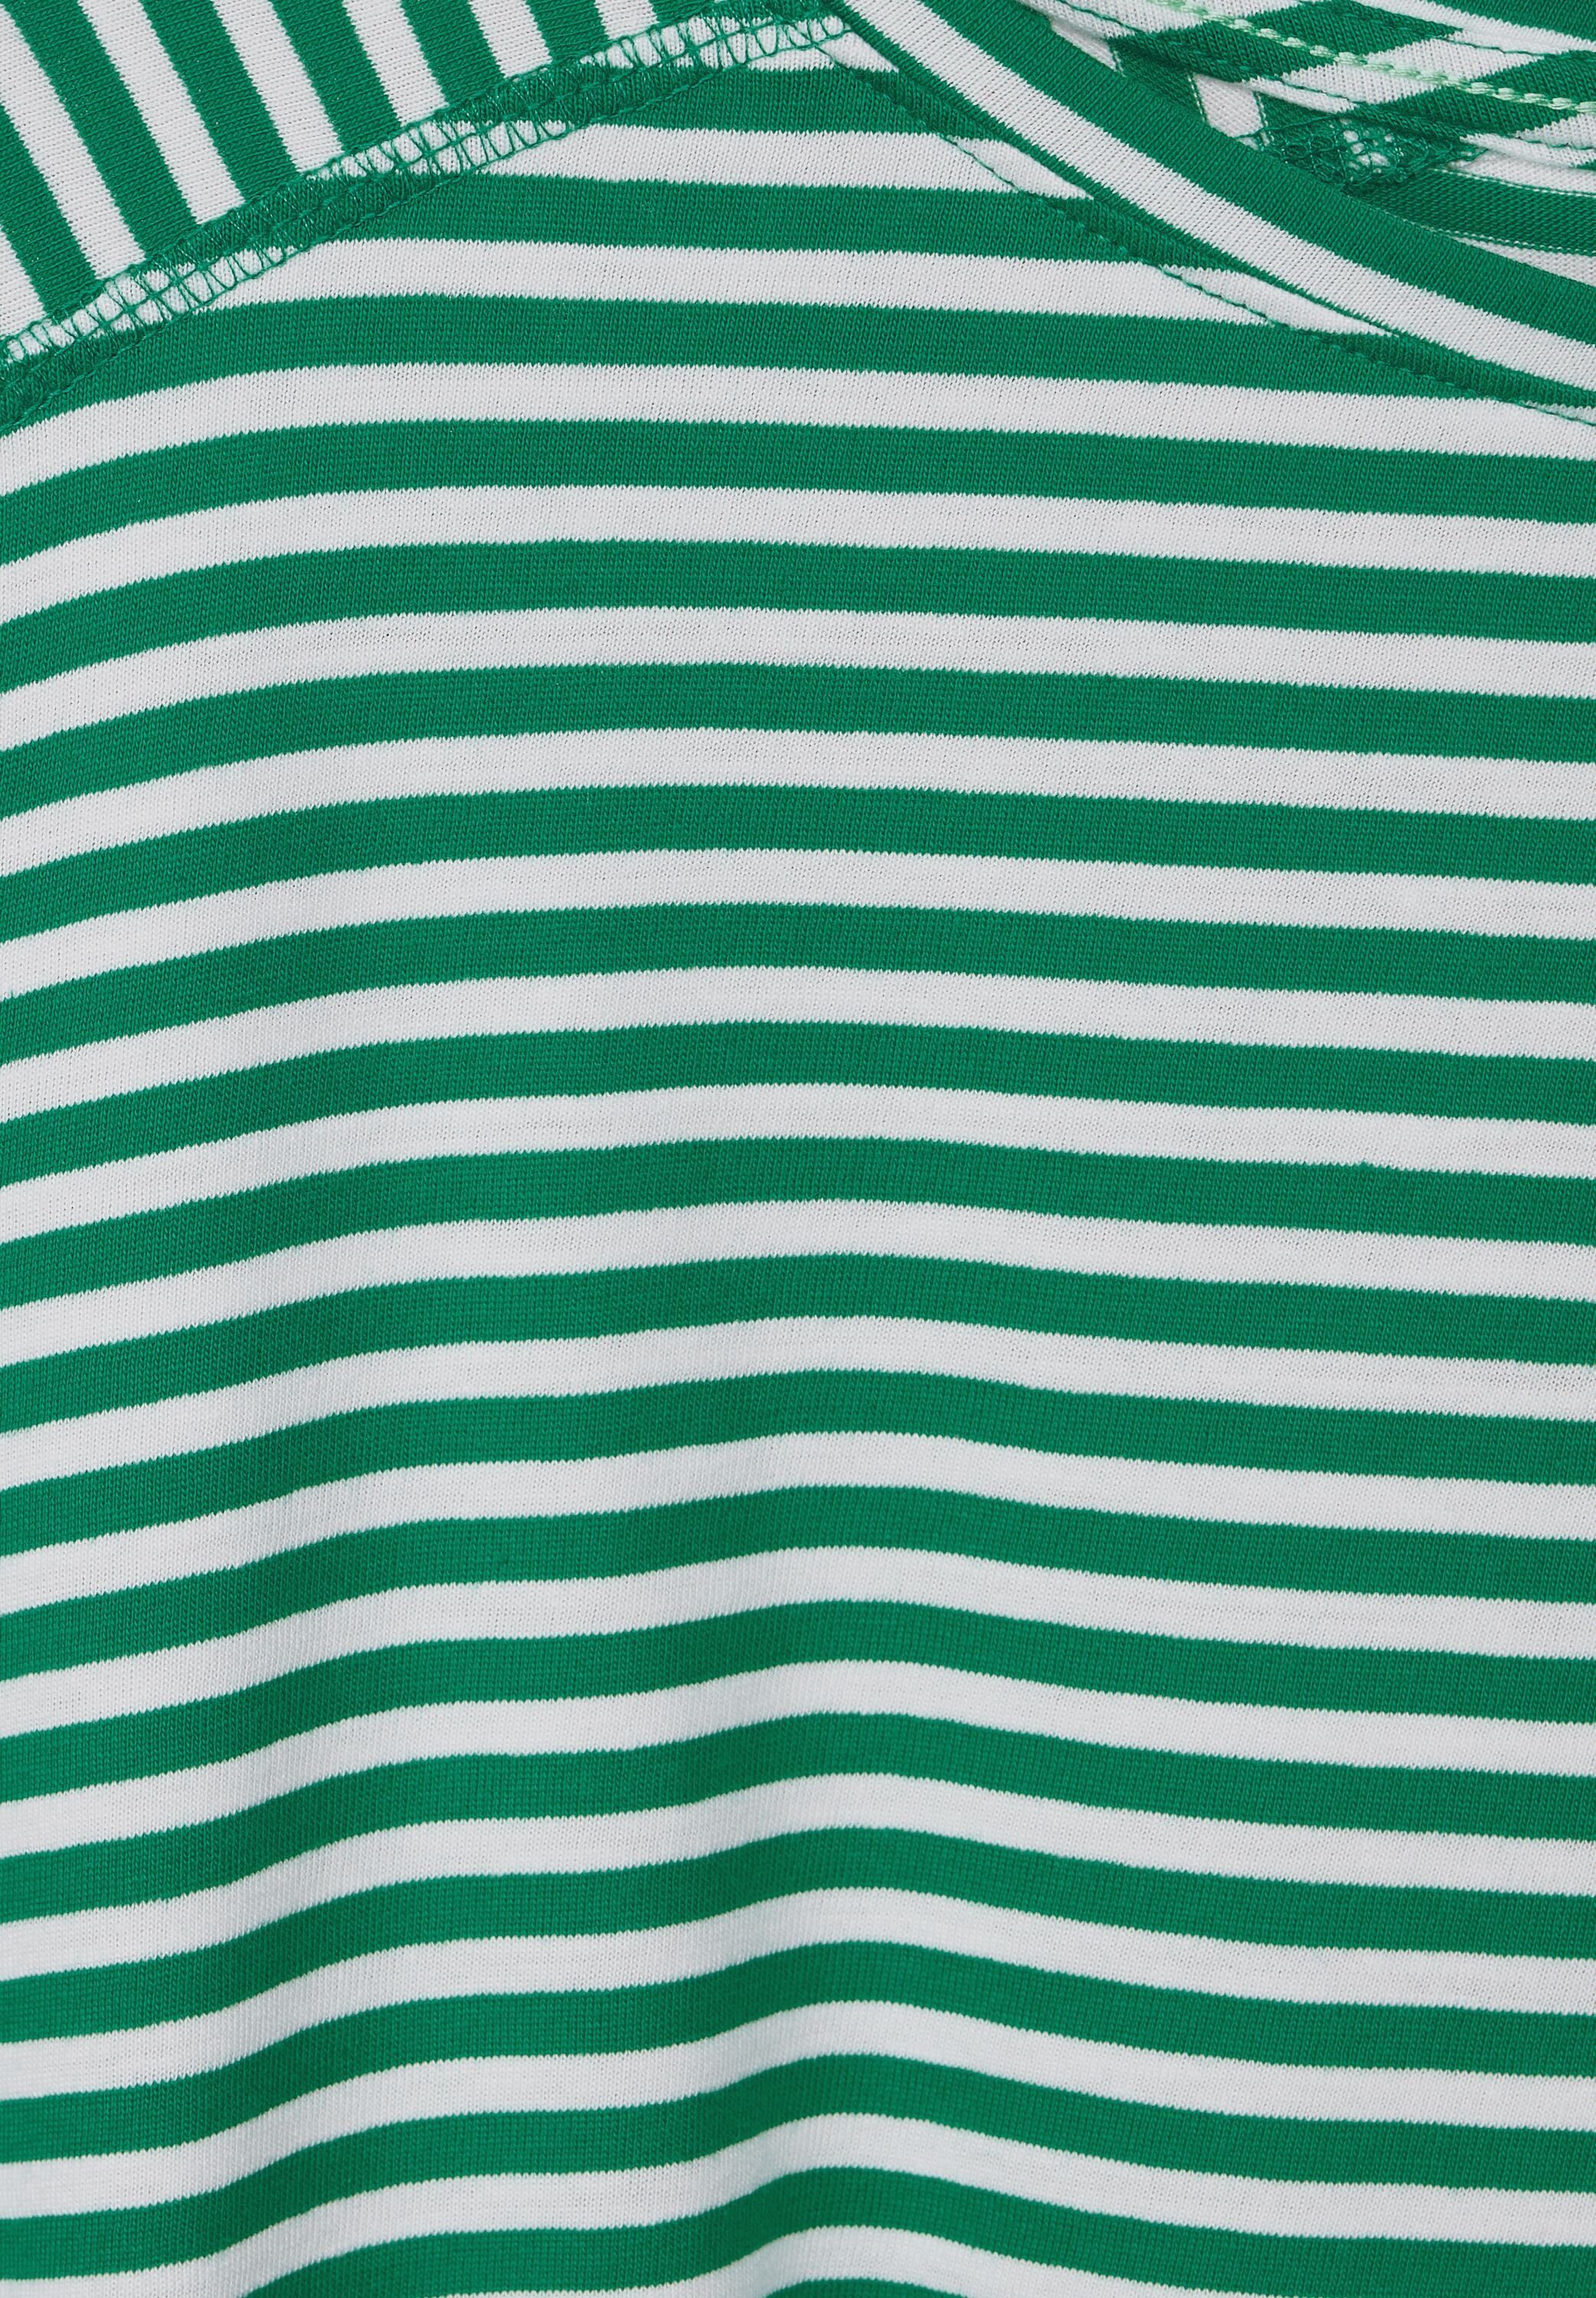 Cecil 3/4-Arm-Shirt luscious mit green U-Boot-Ausschnitt